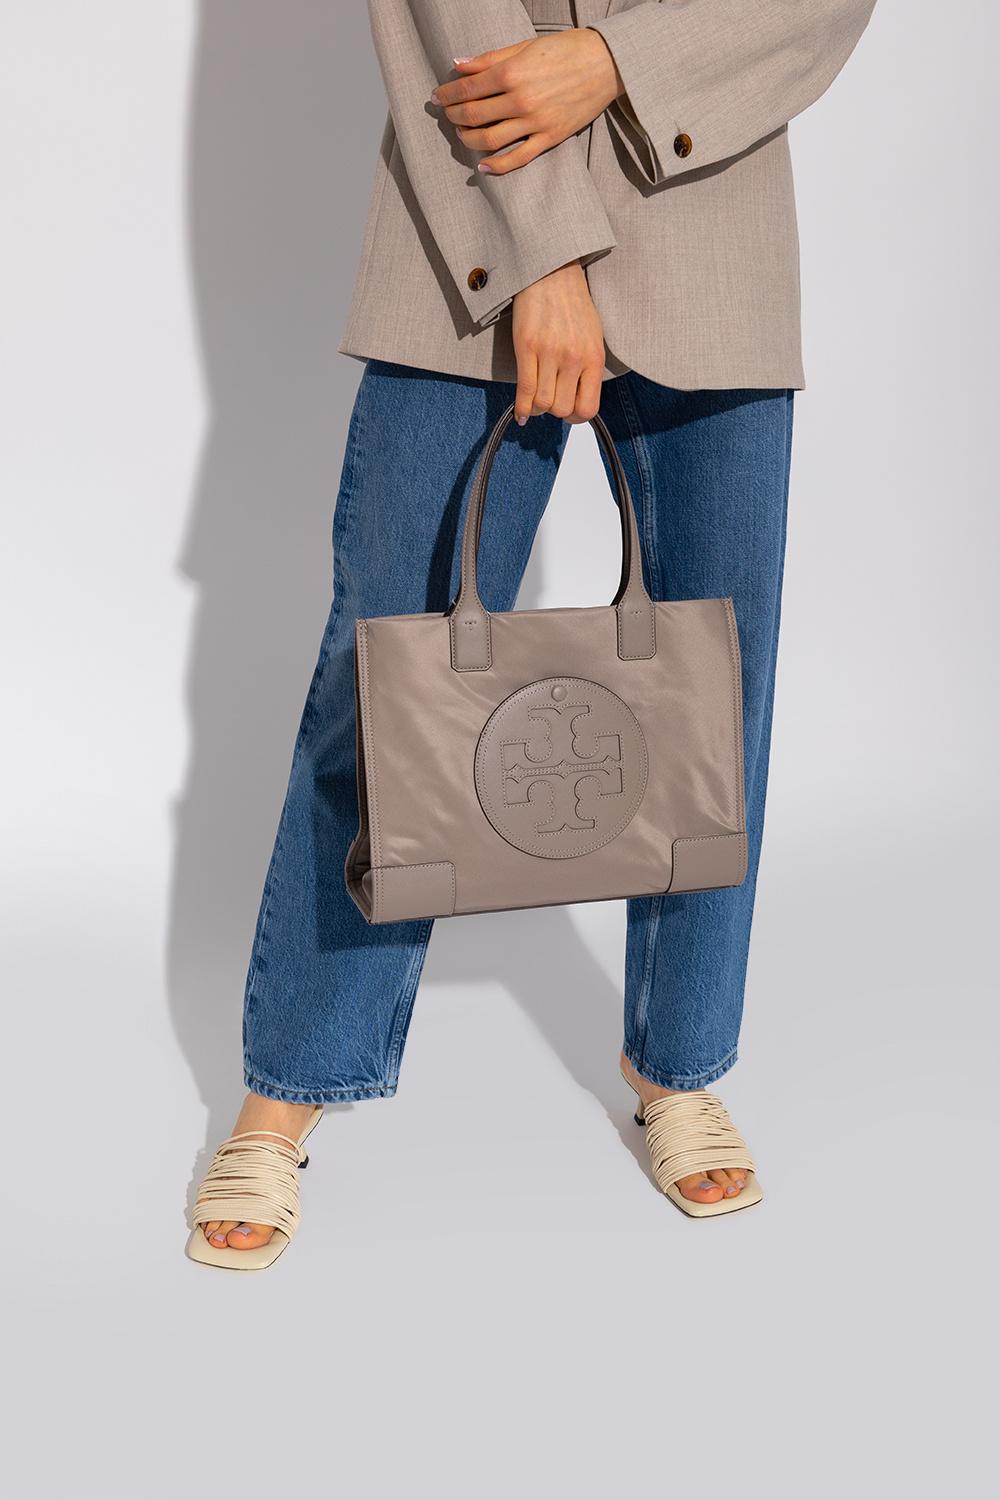 Tory Burch 'ella Small' Shopper Bag in Gray | Lyst